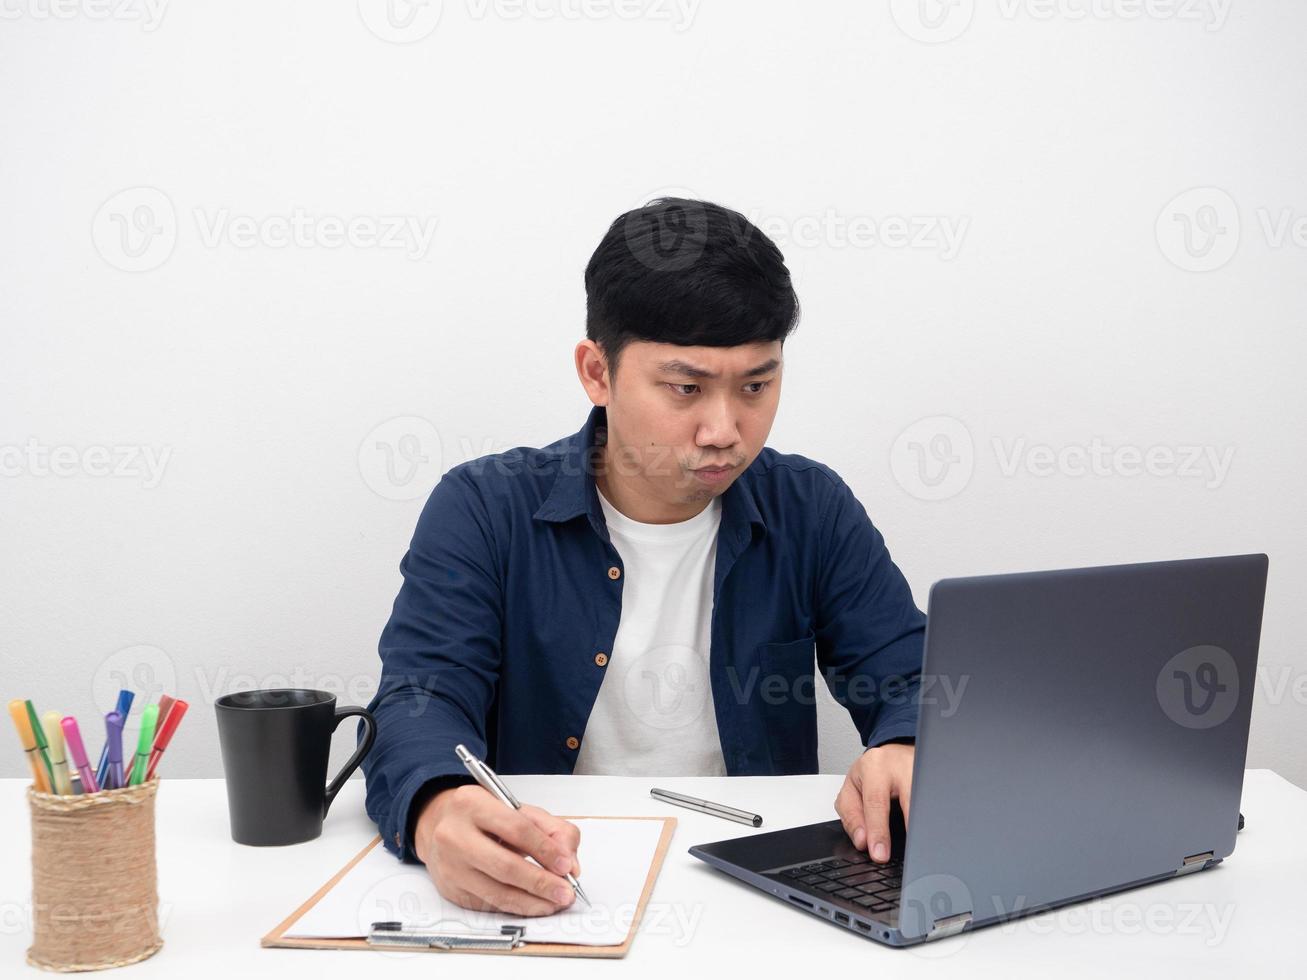 Arbeiter Mann sitzt am Büroarbeitsplatz ernste Emotionen mit Laptop auf dem Tisch foto